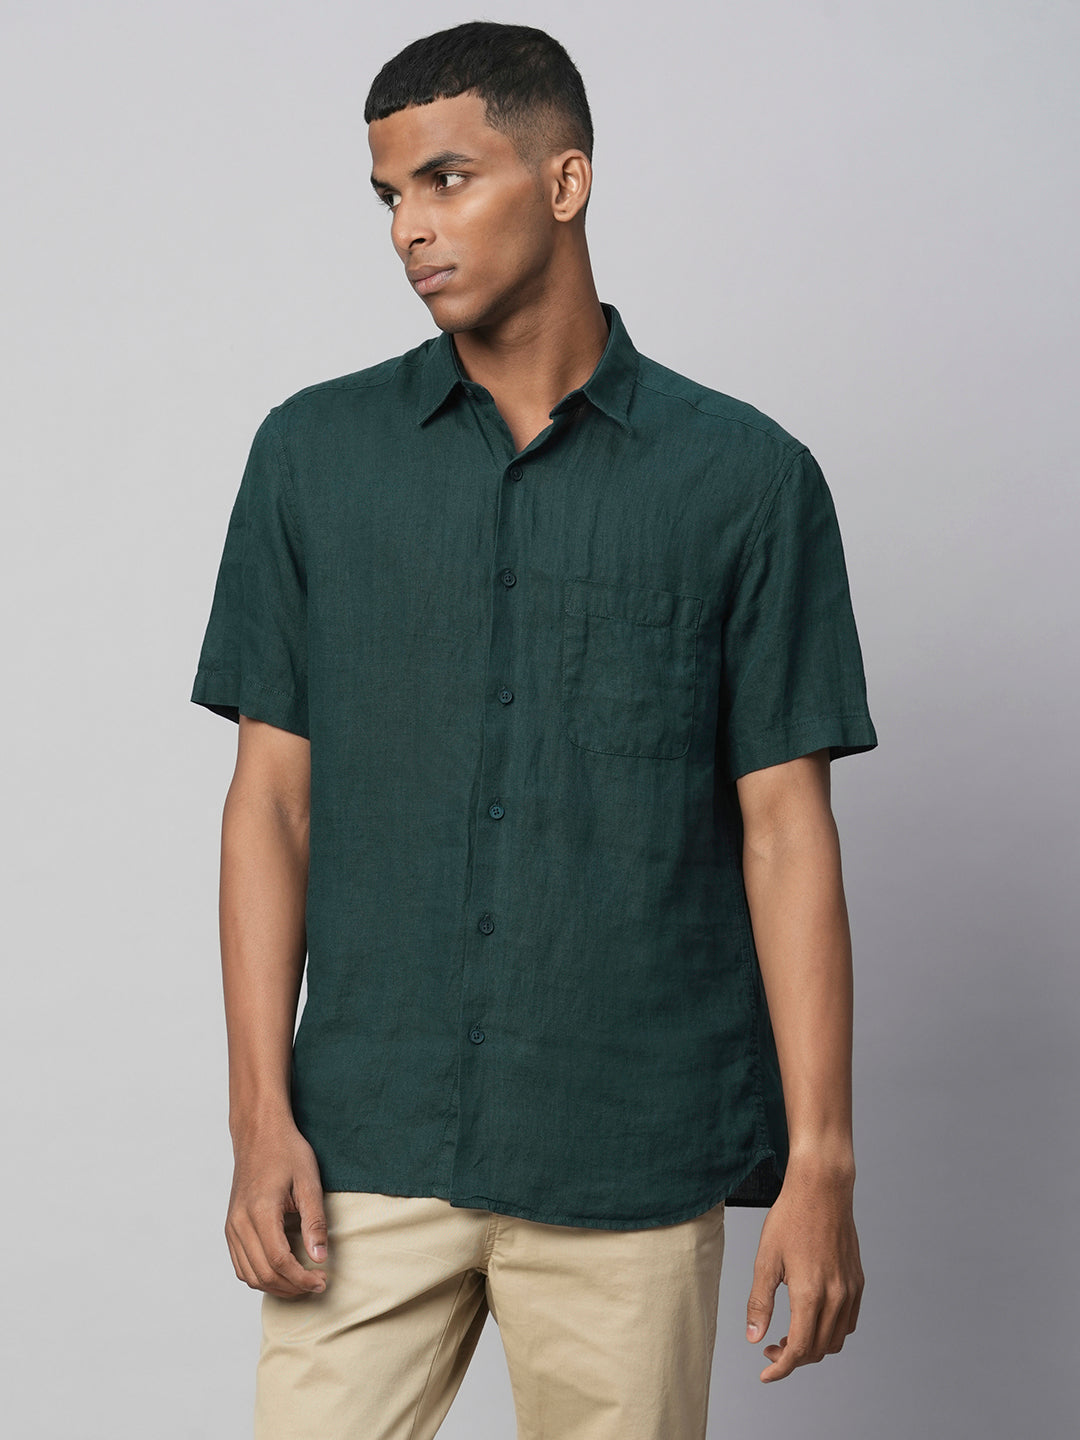 Men's Darkgreen 100% Linen Regular Fit Shirts